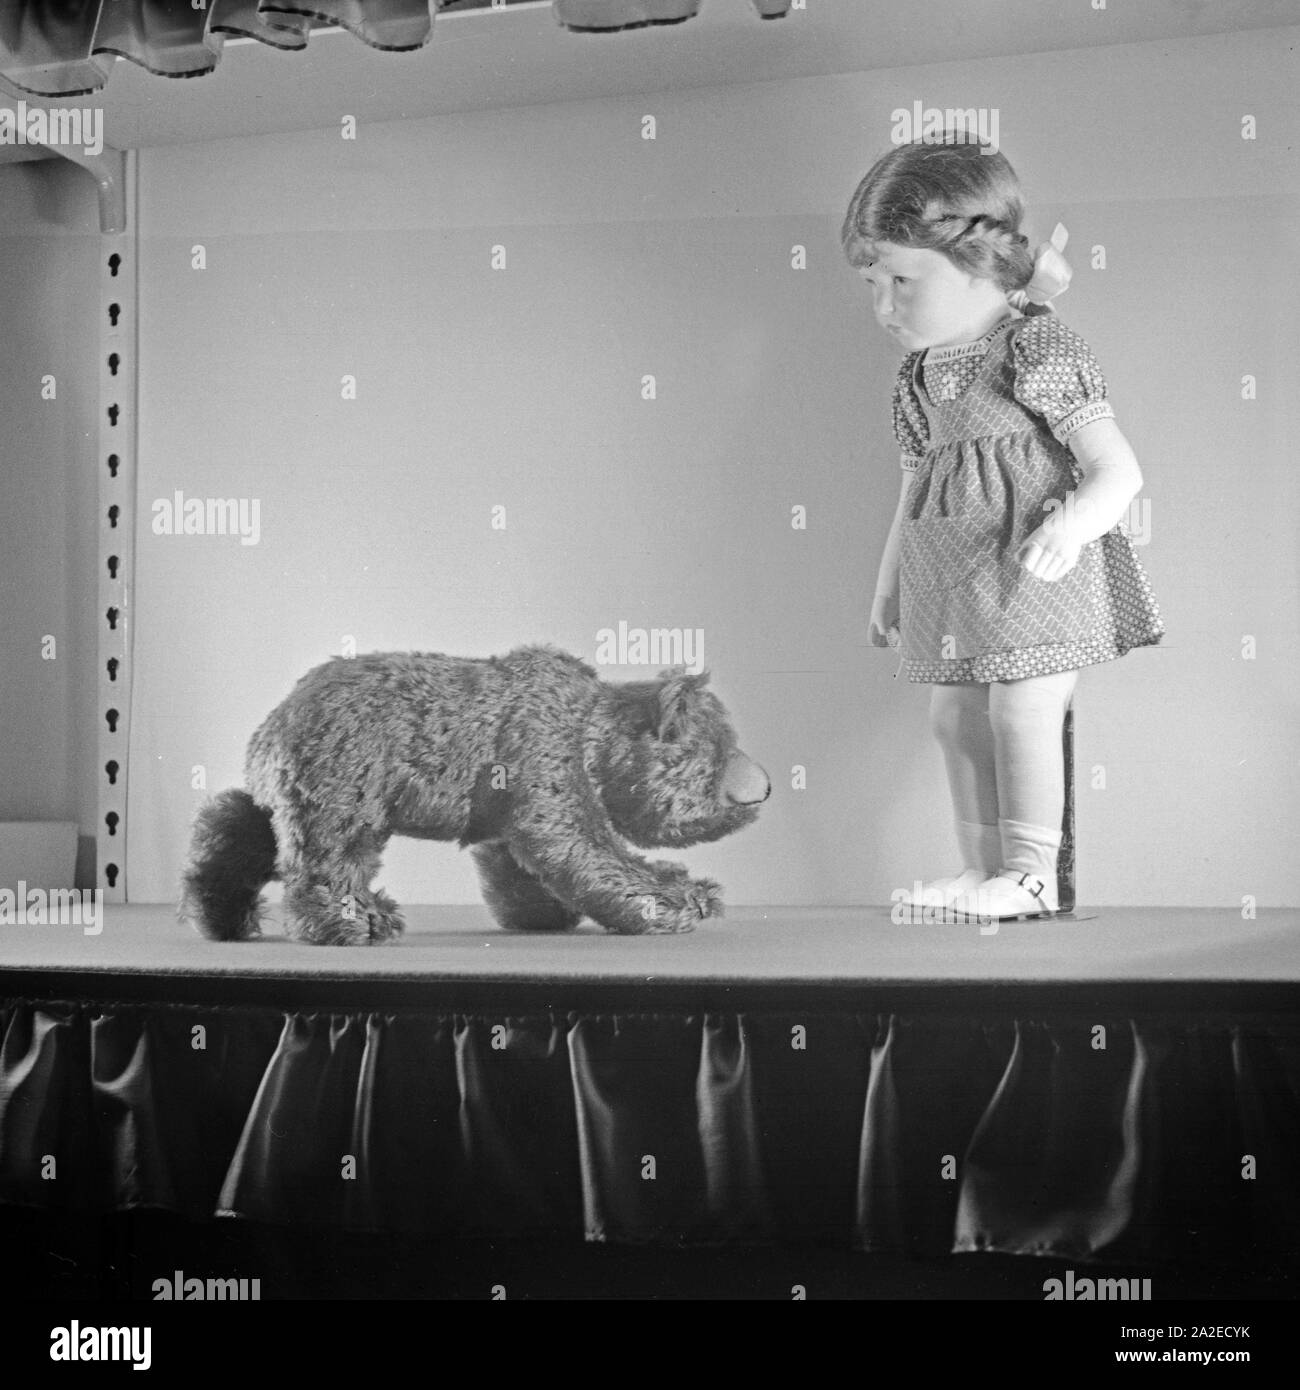 Einige Modelle, hier das Mädchen und der Bär, der berühmten Kate Kruse Puppen aus Bad Kösen, Deutschland 1930er Jahre. Alcuni campioni del famoso Kaethe Kruse bambole di Bad Koesen, Germania 1930s. Foto Stock